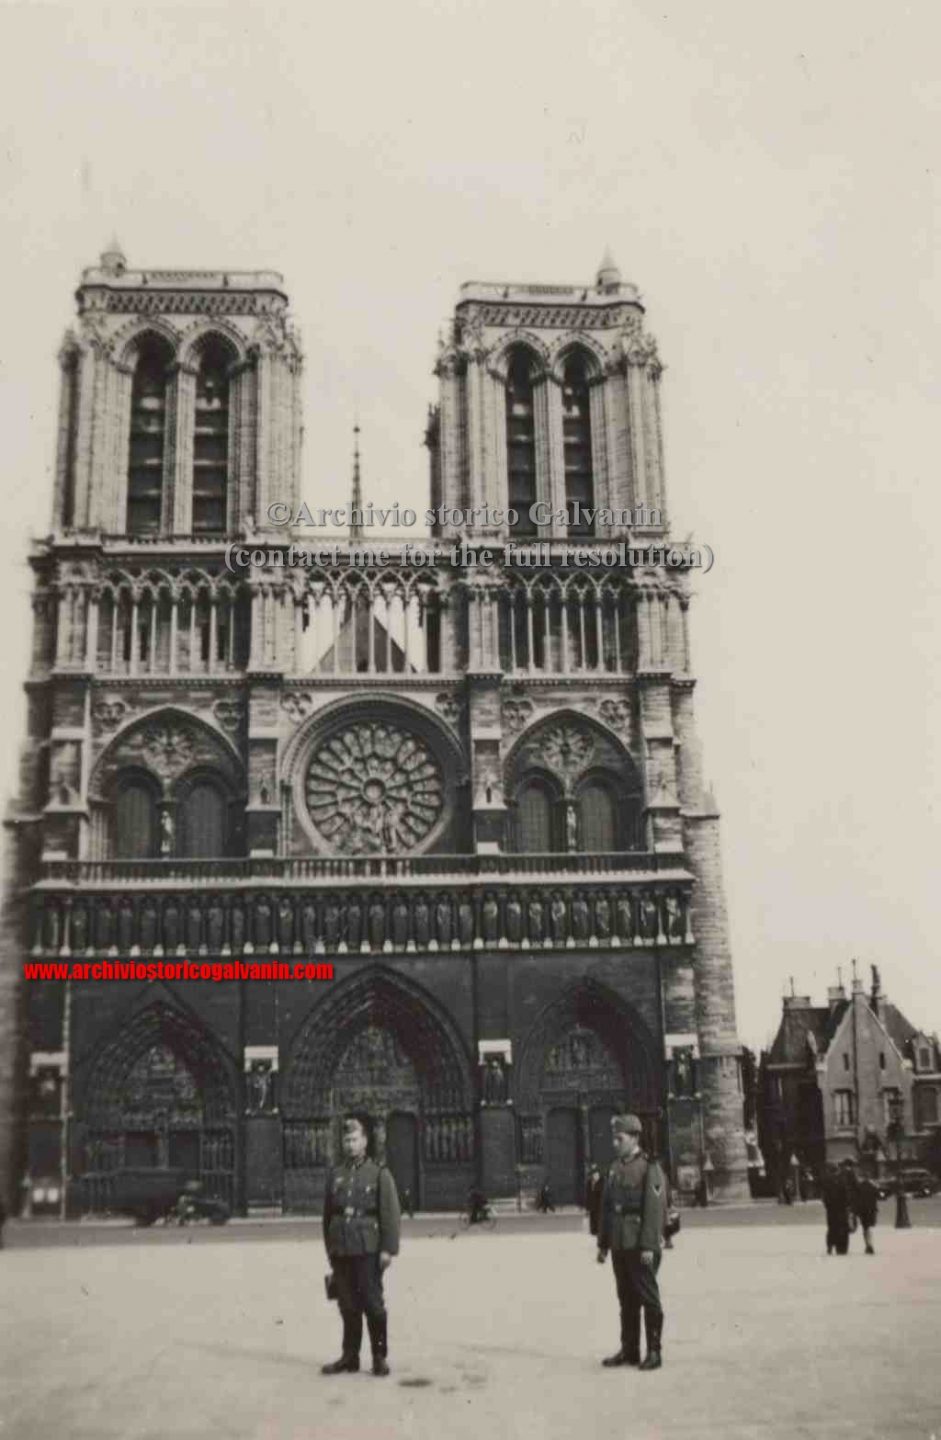 Notre Dame 1940, Notre Dame 1941, Notre Dame 1942, Notre Dame 1943, Notre Dame 1944, Notre Dame occupation, paris 1940